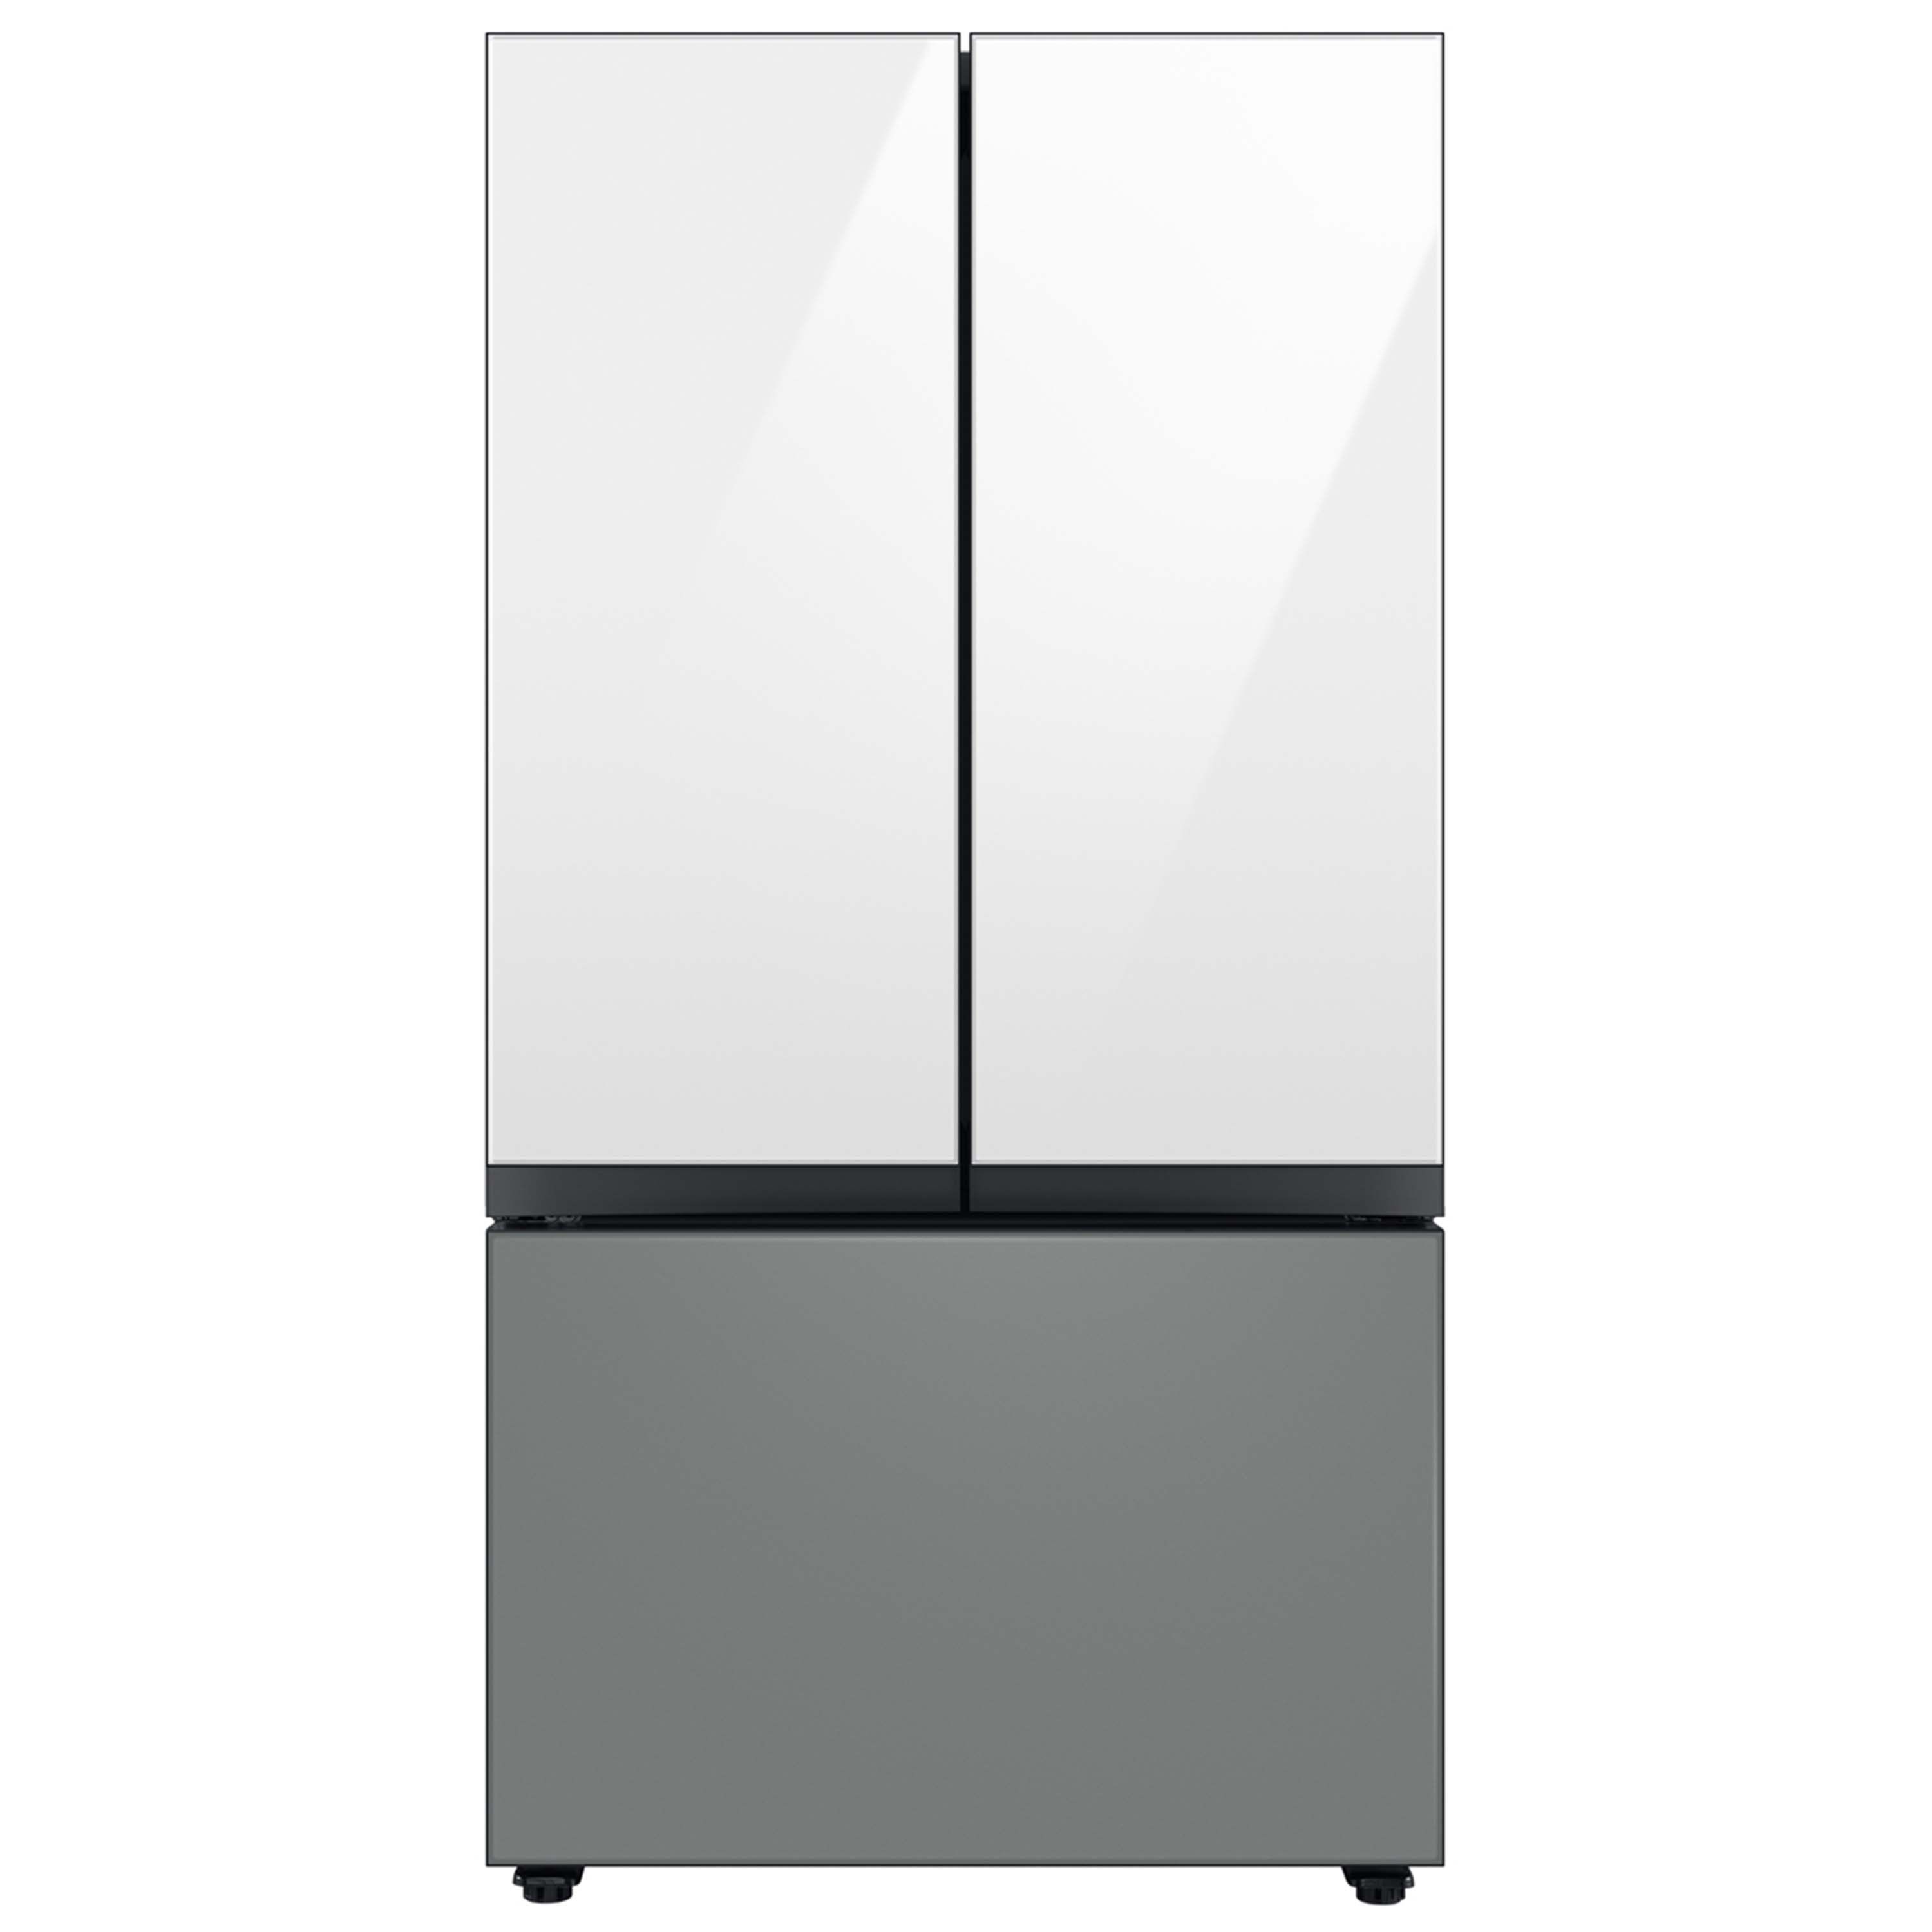 Bespoke 3-Door French Door Refrigerator (30 cu. ft.) with Beverage Center™  in Emerald Green Steel Refrigerators - BNDL-1650311467546